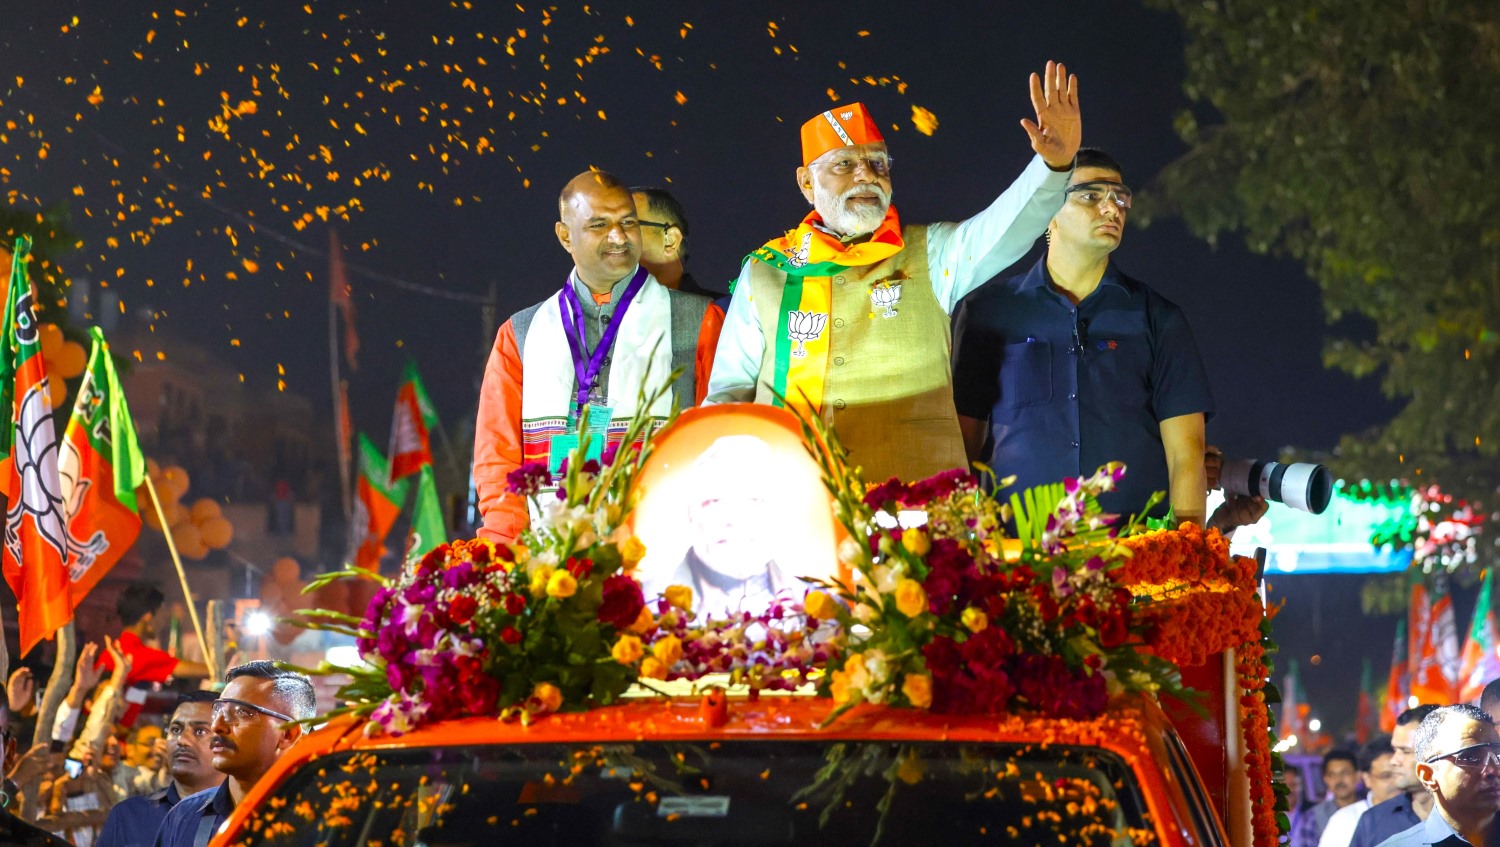 Road Show – जयपुर में प्रधानमंत्री नरेन्द्र मोदी ने किया रोड शो, एक झलक देखने के लिए बड़ी संख्या में पहुंचे लोग